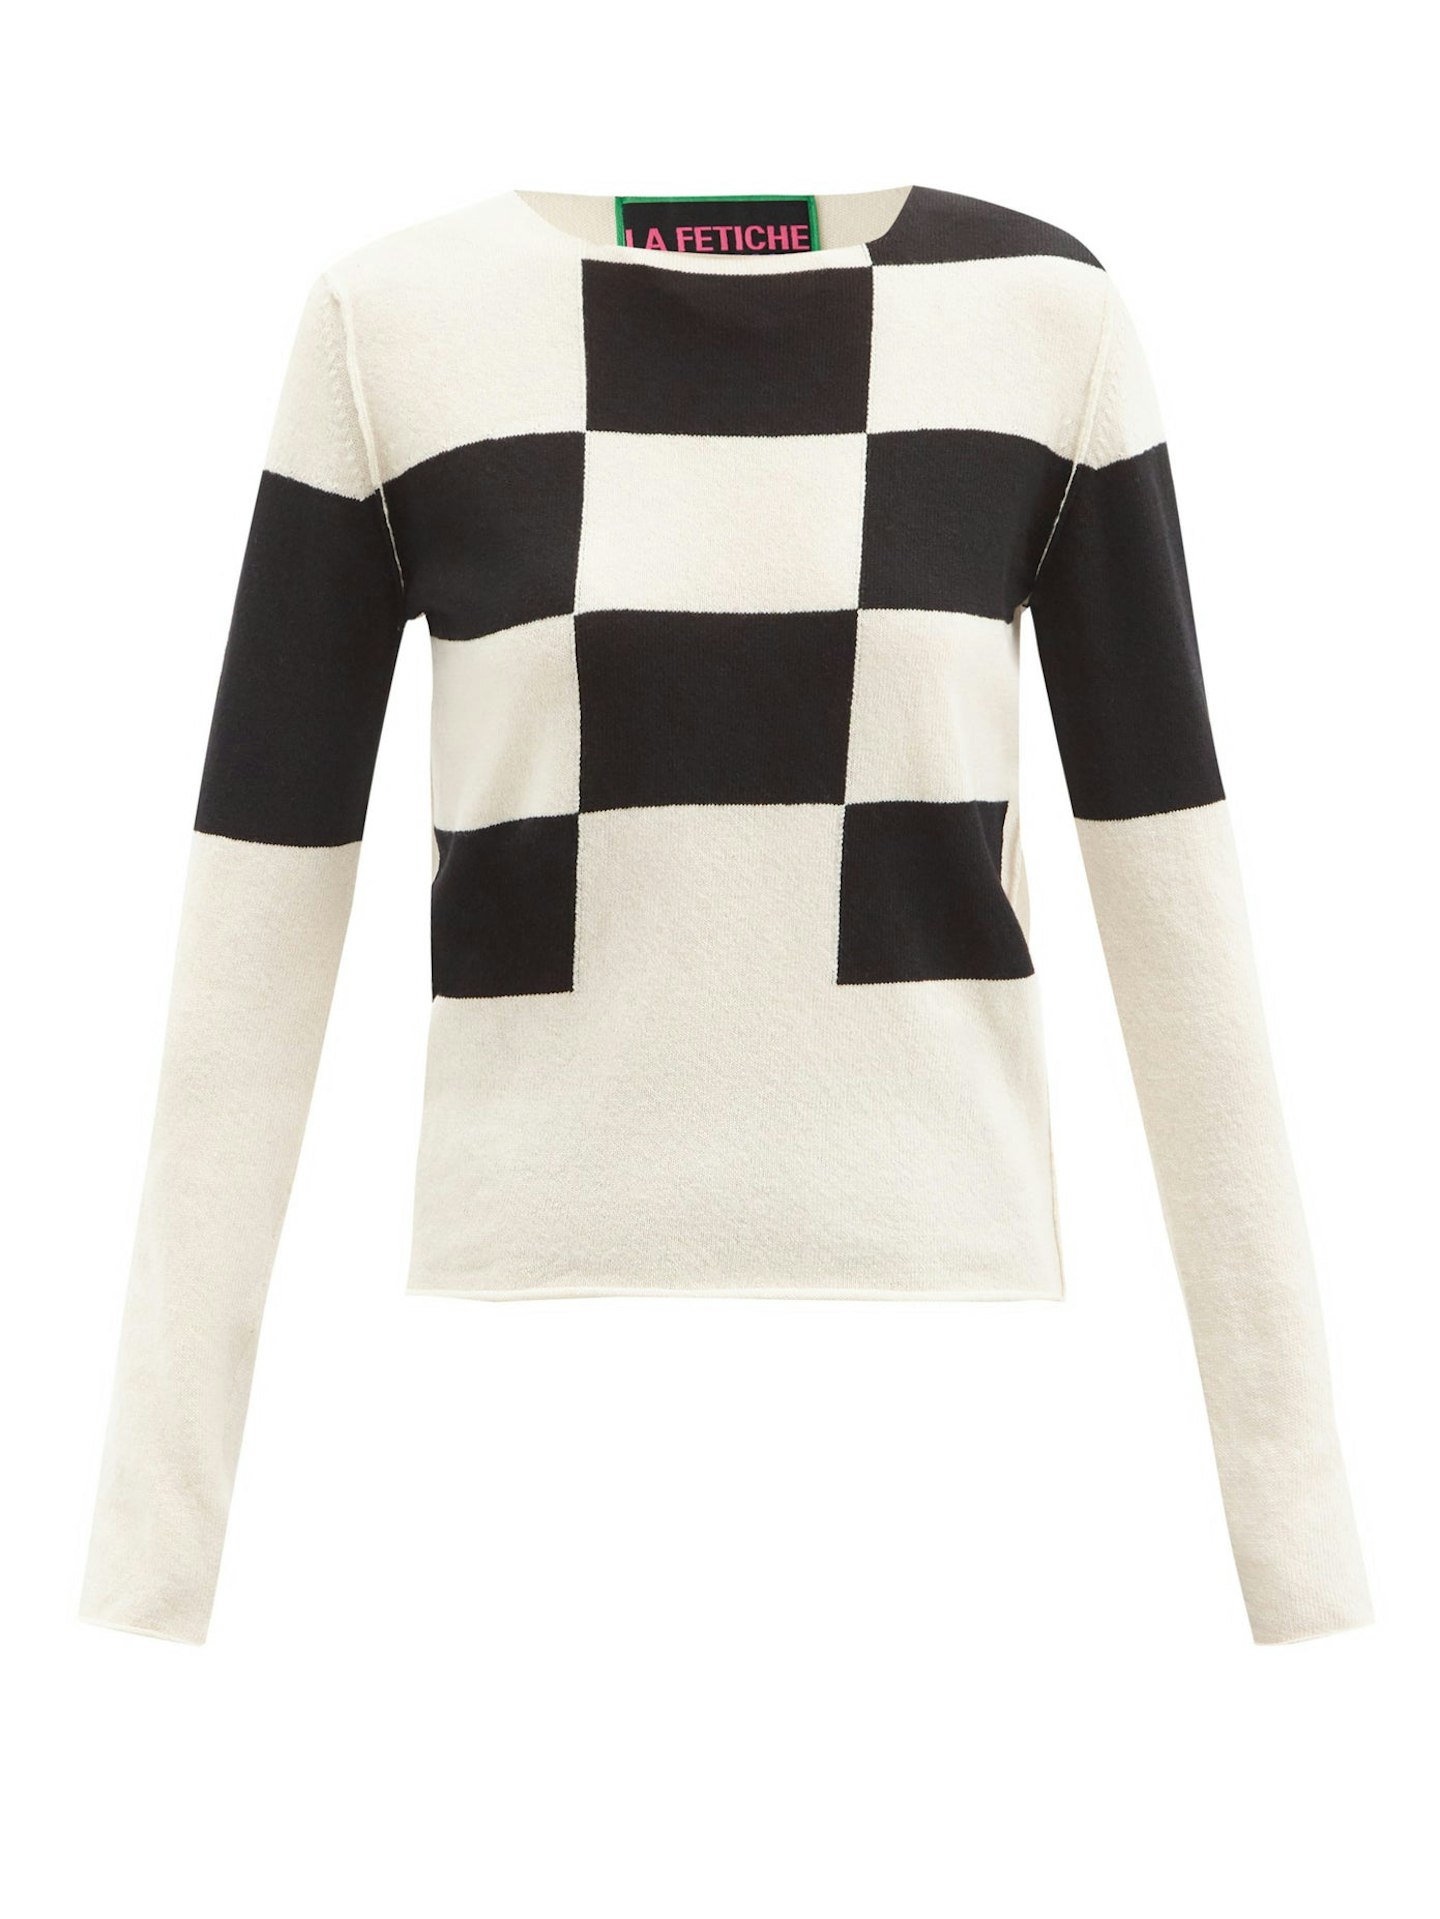 La Fetiche, Tuffin check lambswool sweater, £490